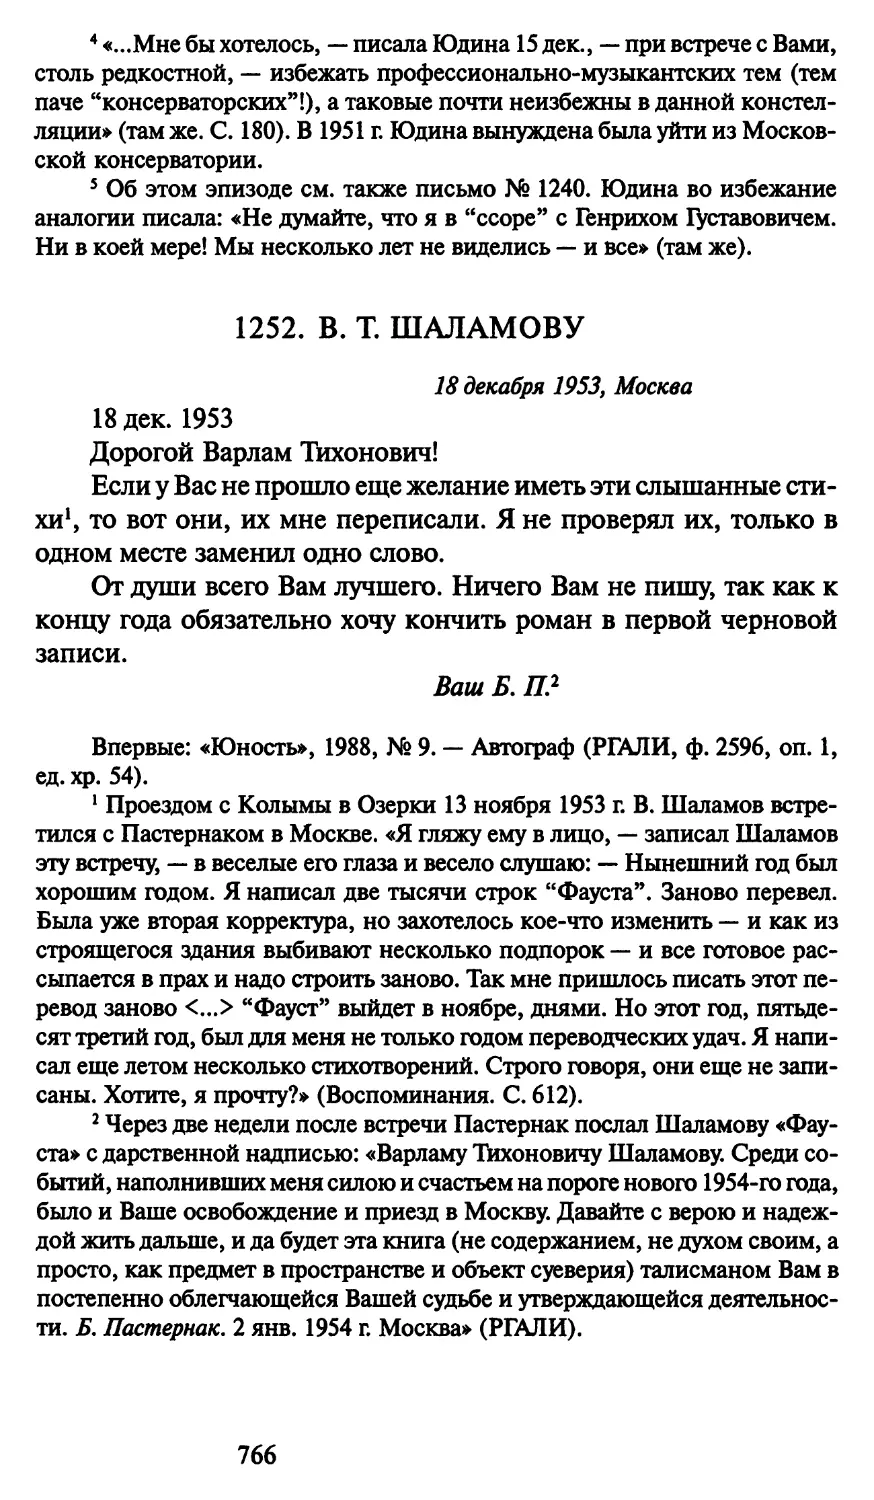 1252. В. Т. Шаламову 18 декабря 1953